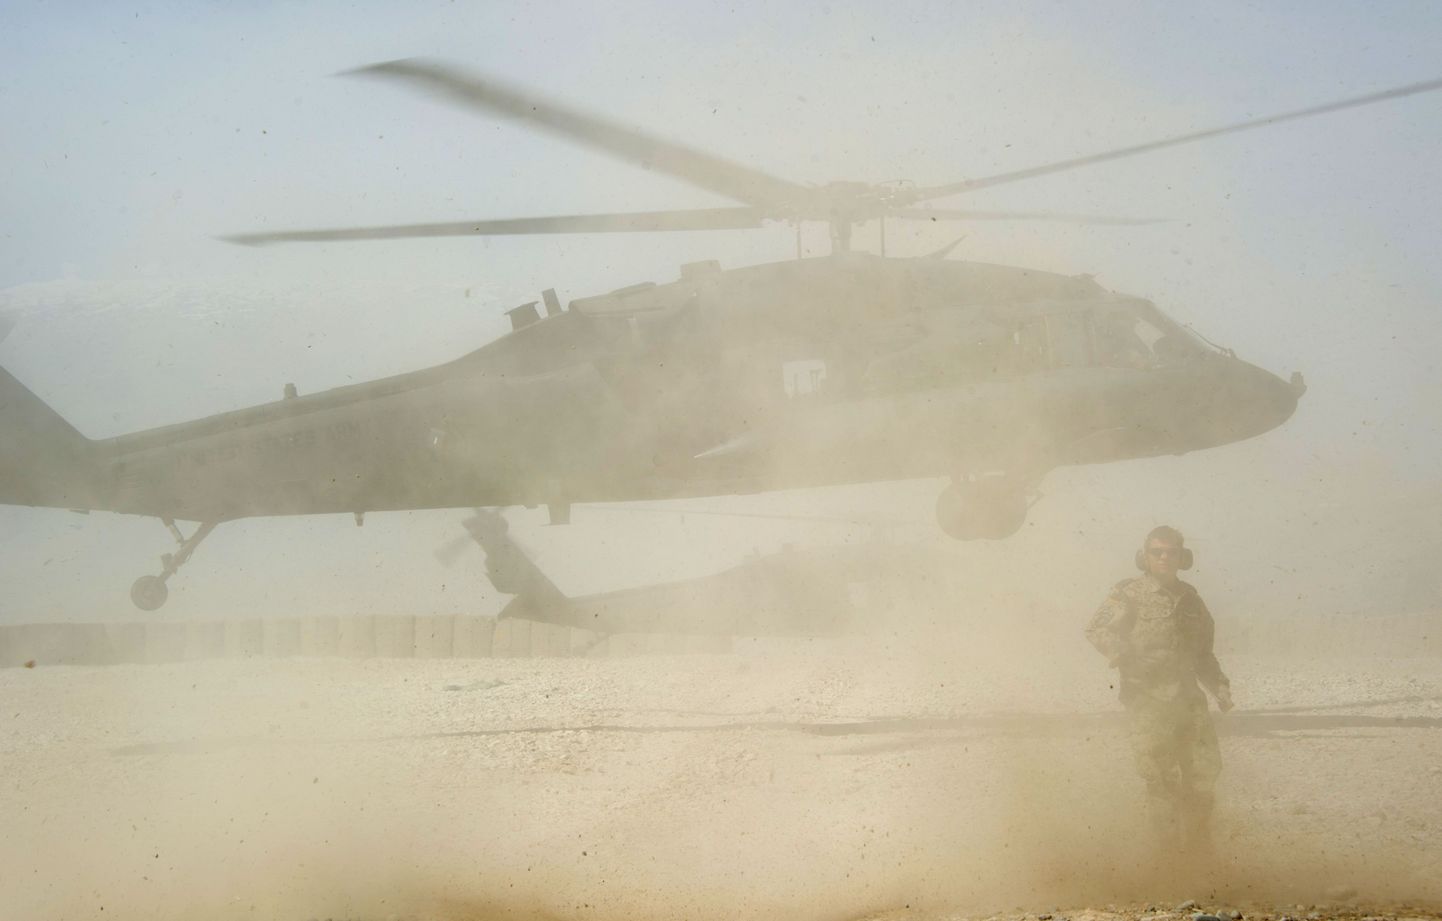 Ühendriikide Black Hawk-tüüpi helikopter Afganistanis.